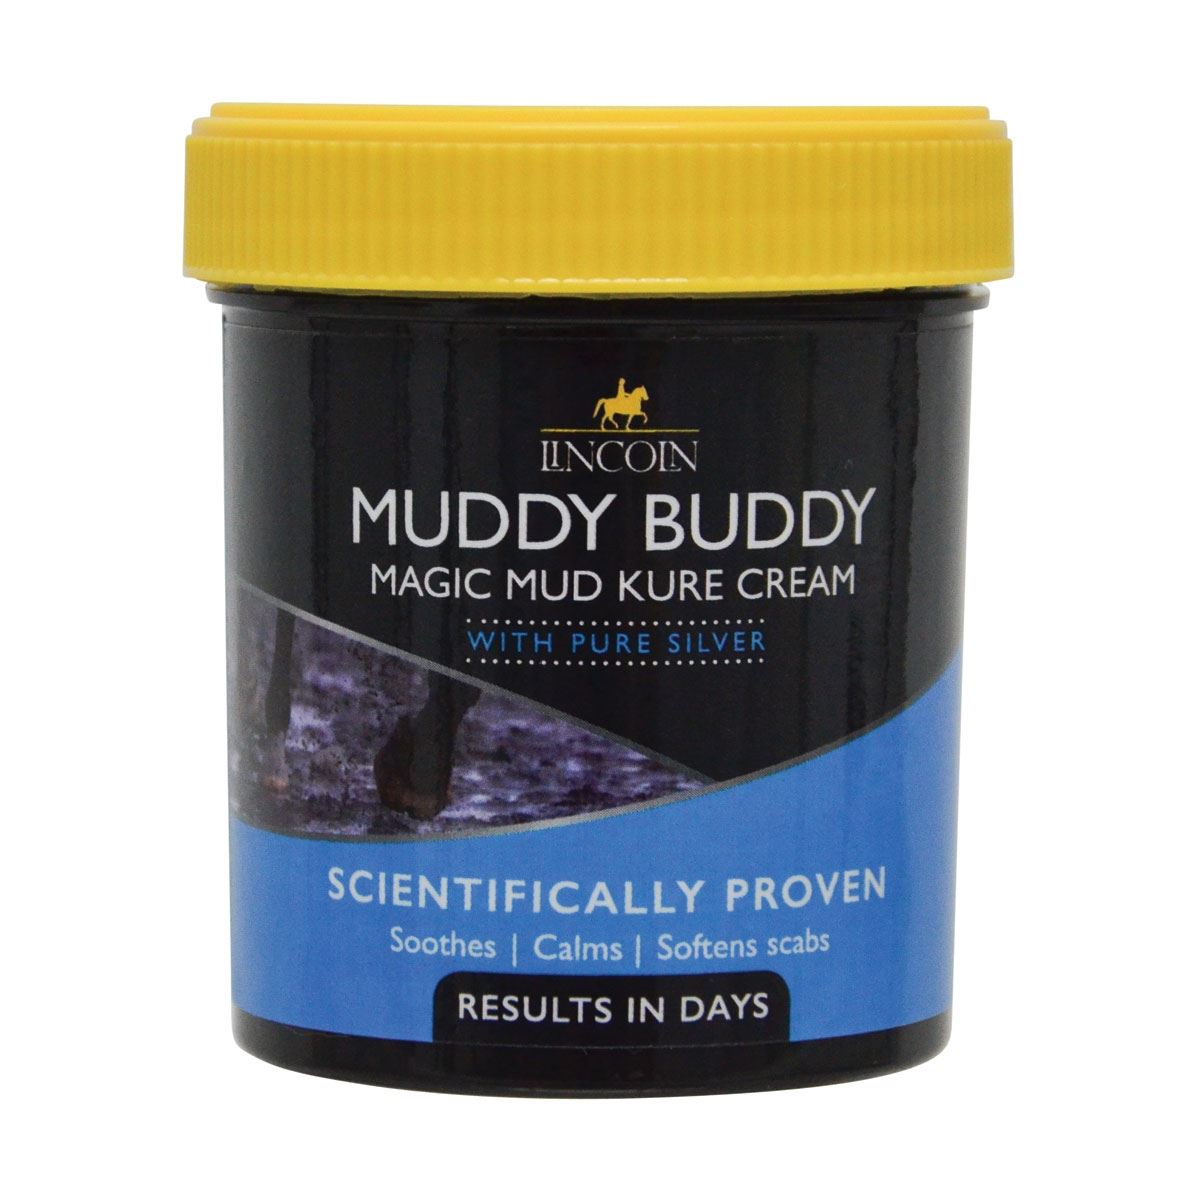 Lincoln Muddy Buddy Magic Mud Kure Cream - Just Horse Riders